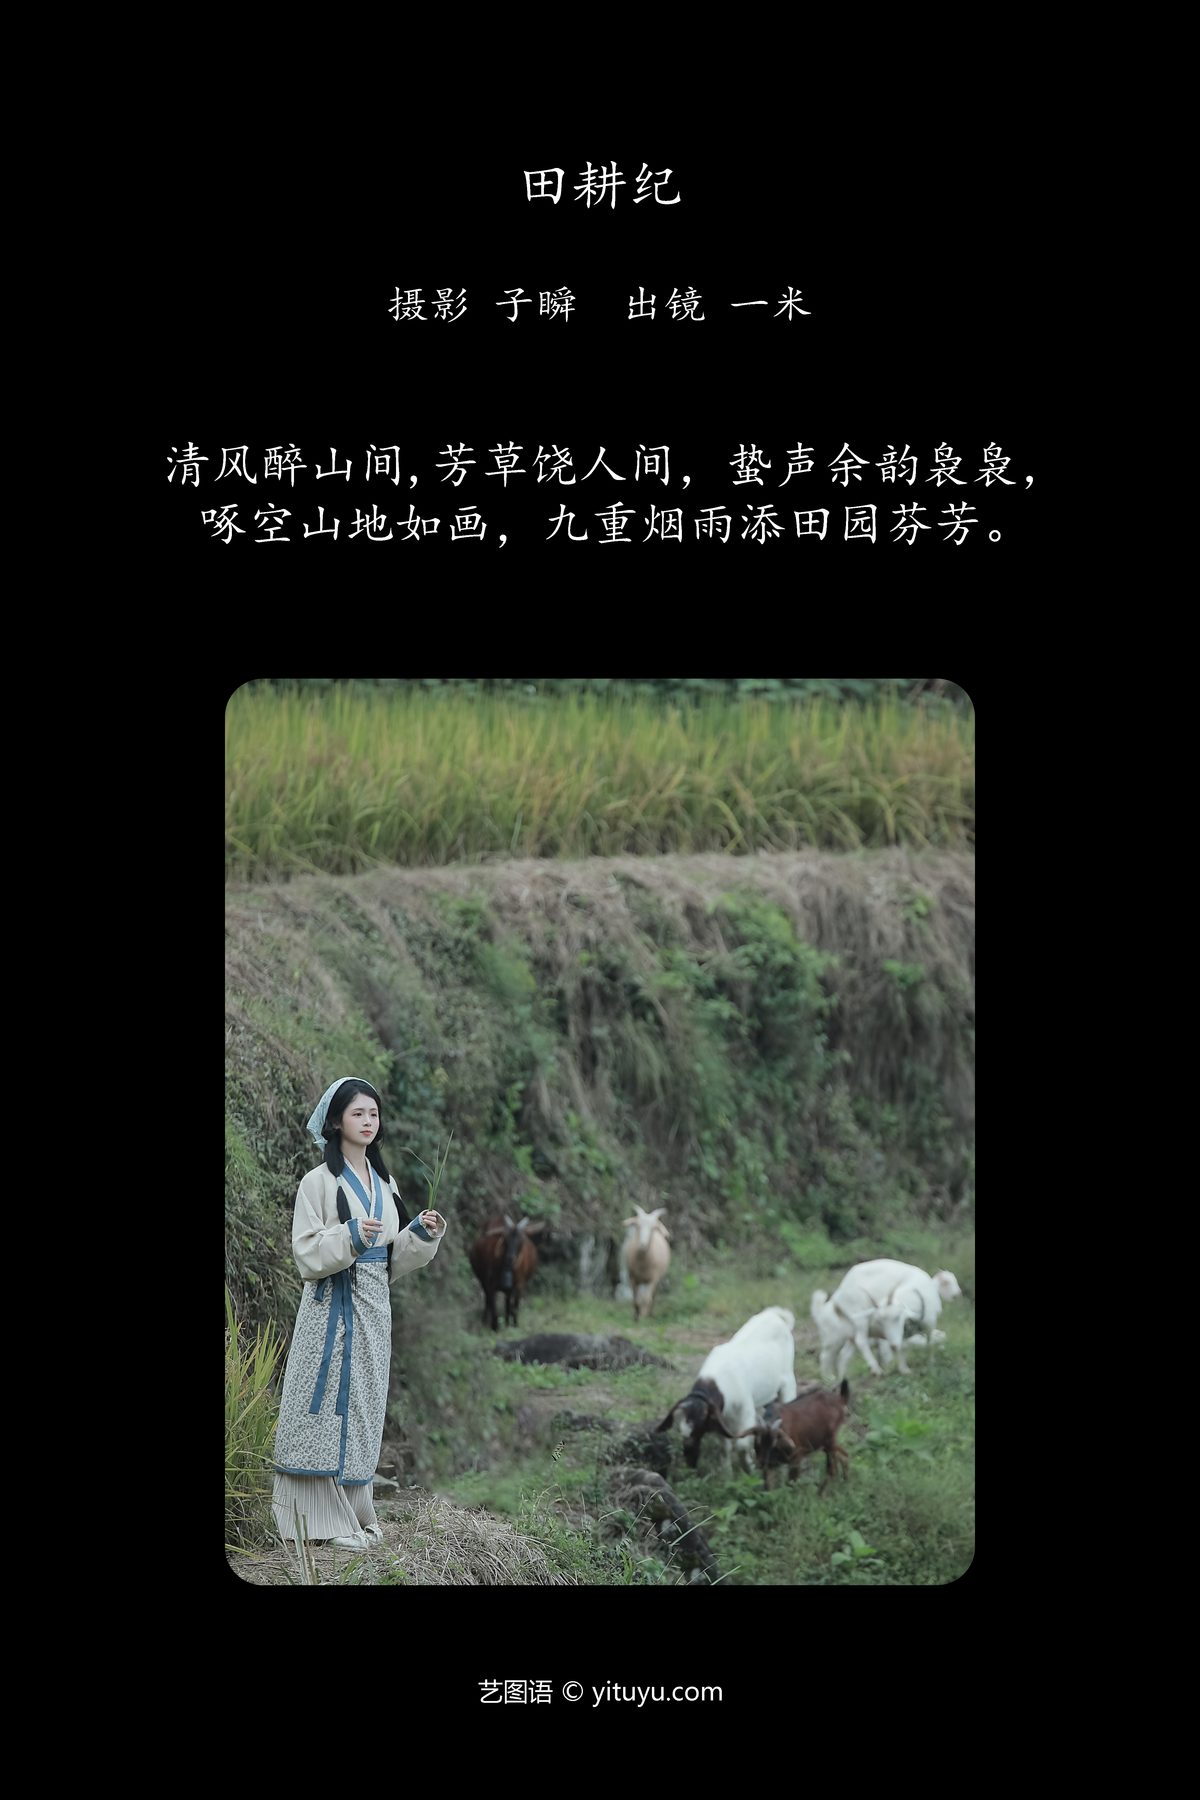 YiTuYu艺图语 Vol 5809 Dai Bu Zhu De Yi Mi 0002 9702201230.jpg